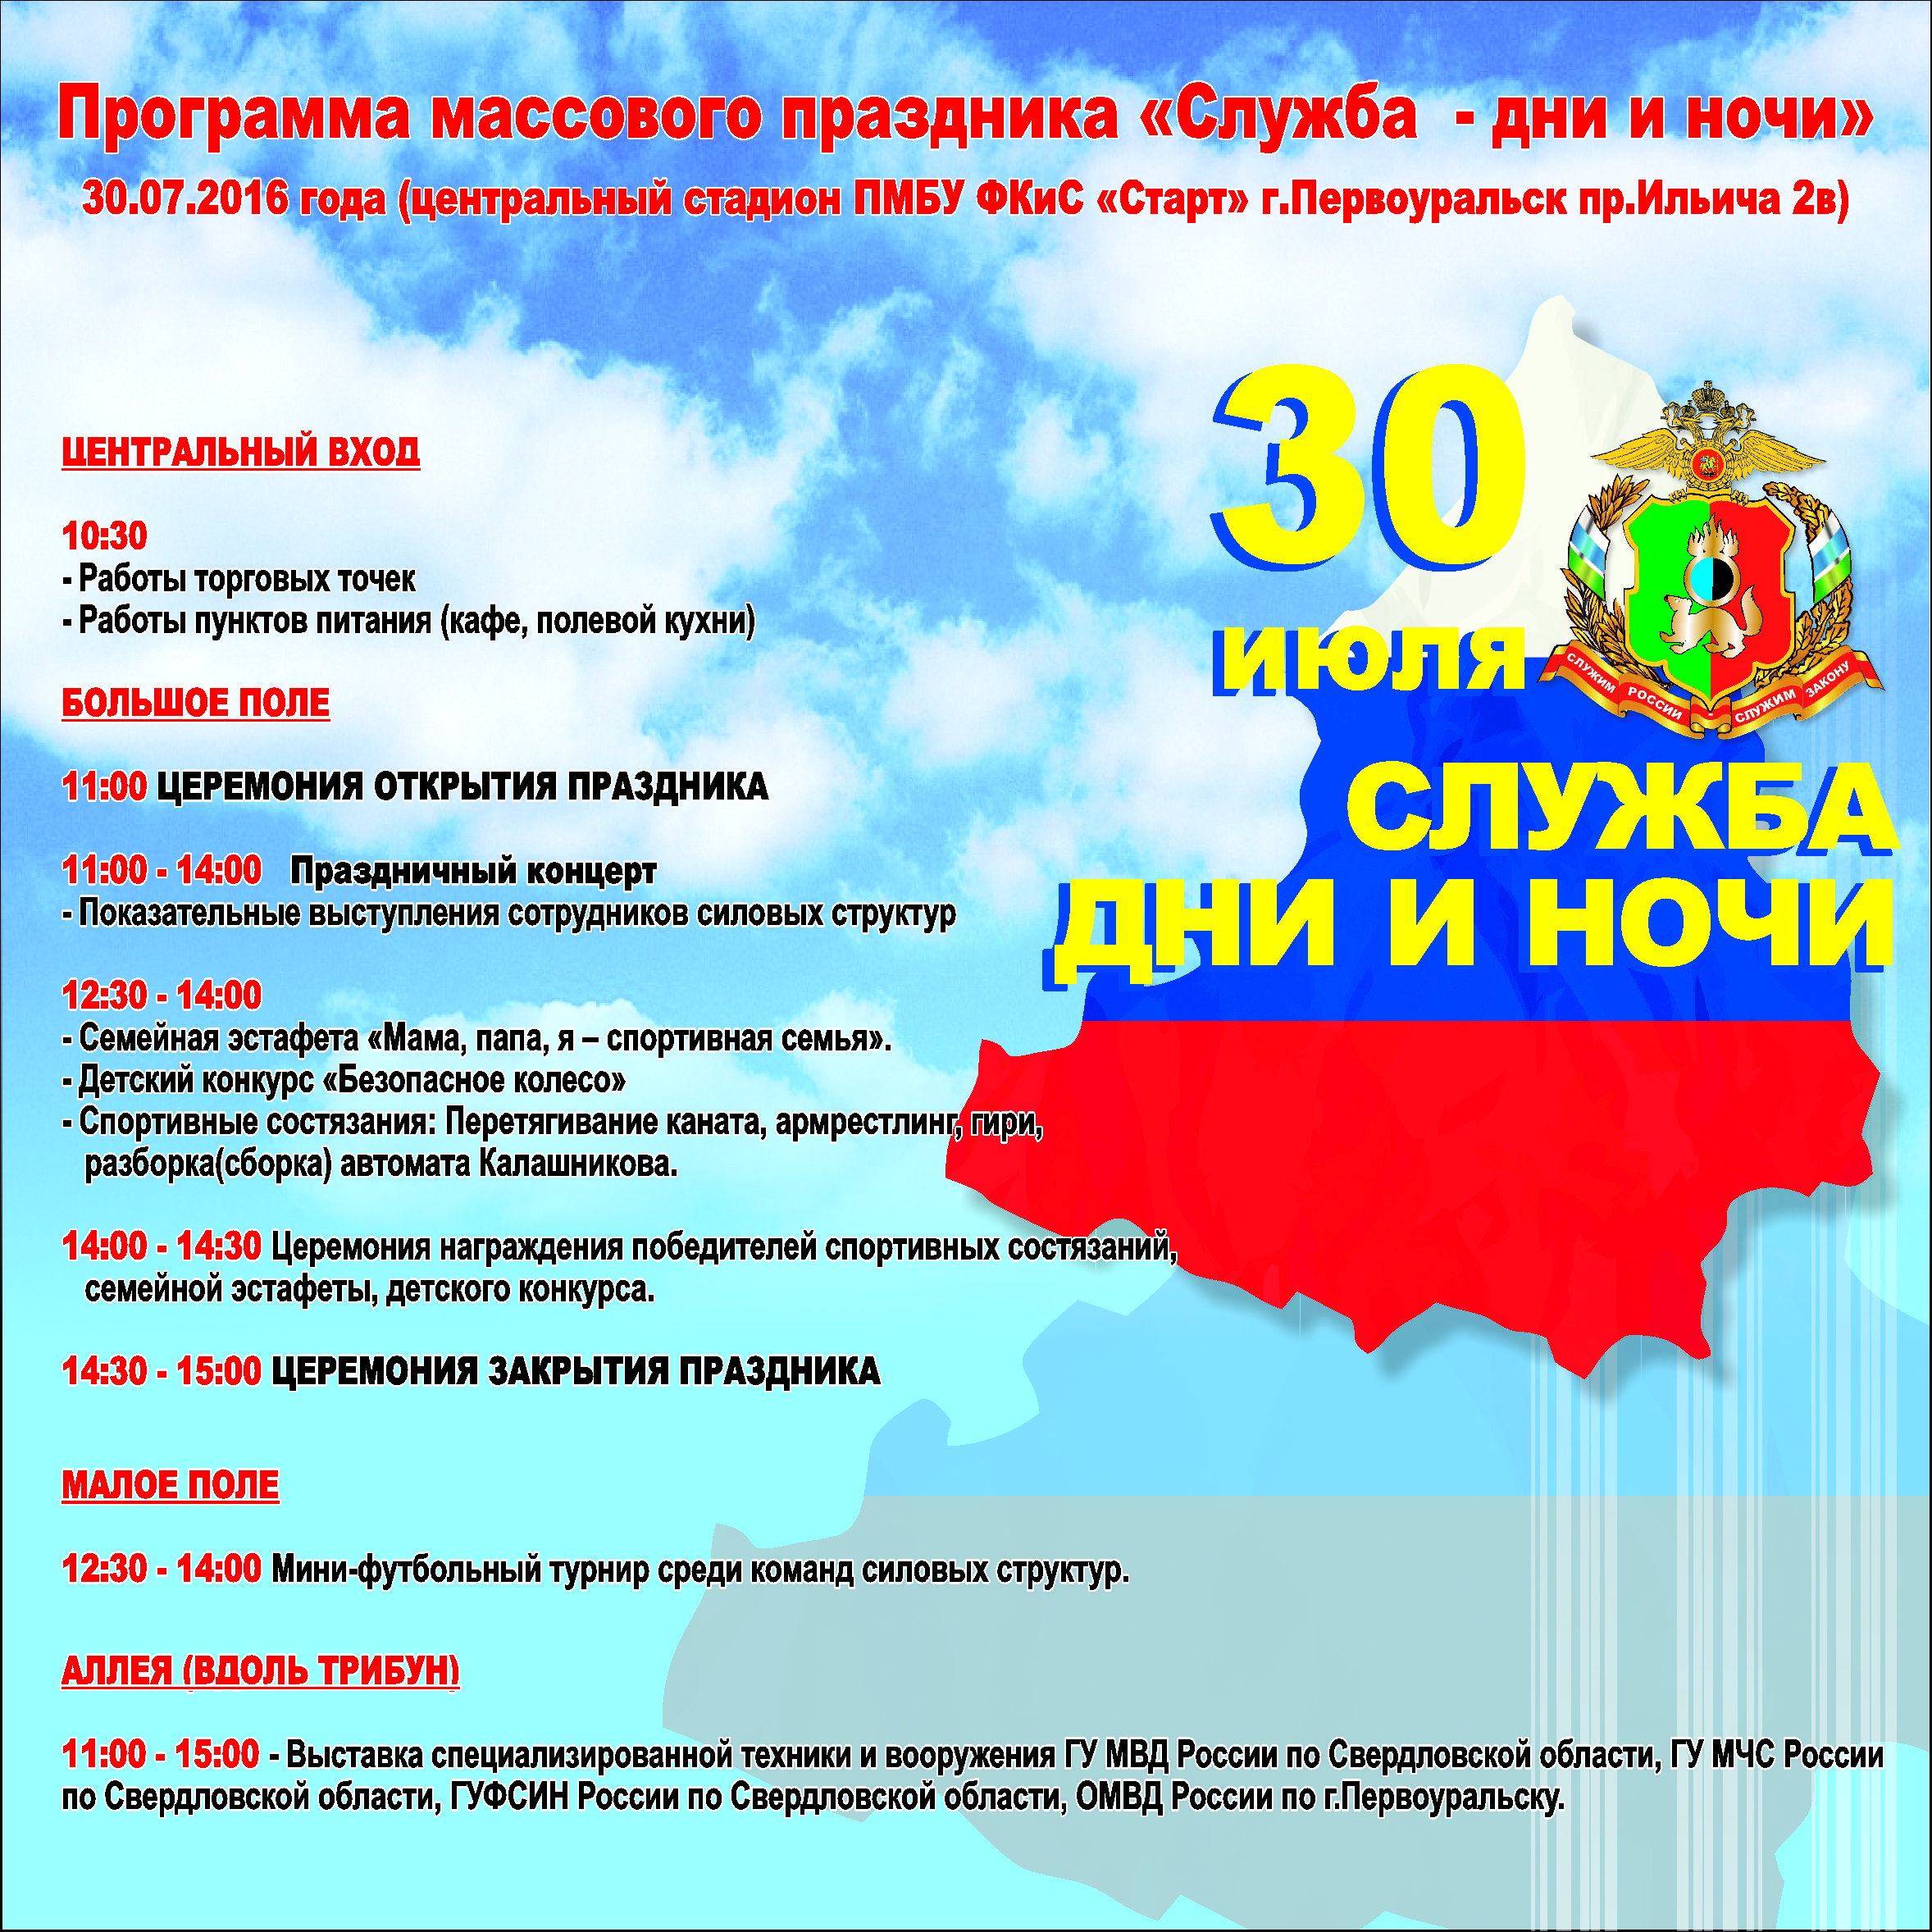 Жителей и гостей Первоуральска приглашают на праздник «Служба – дни и ночи» 